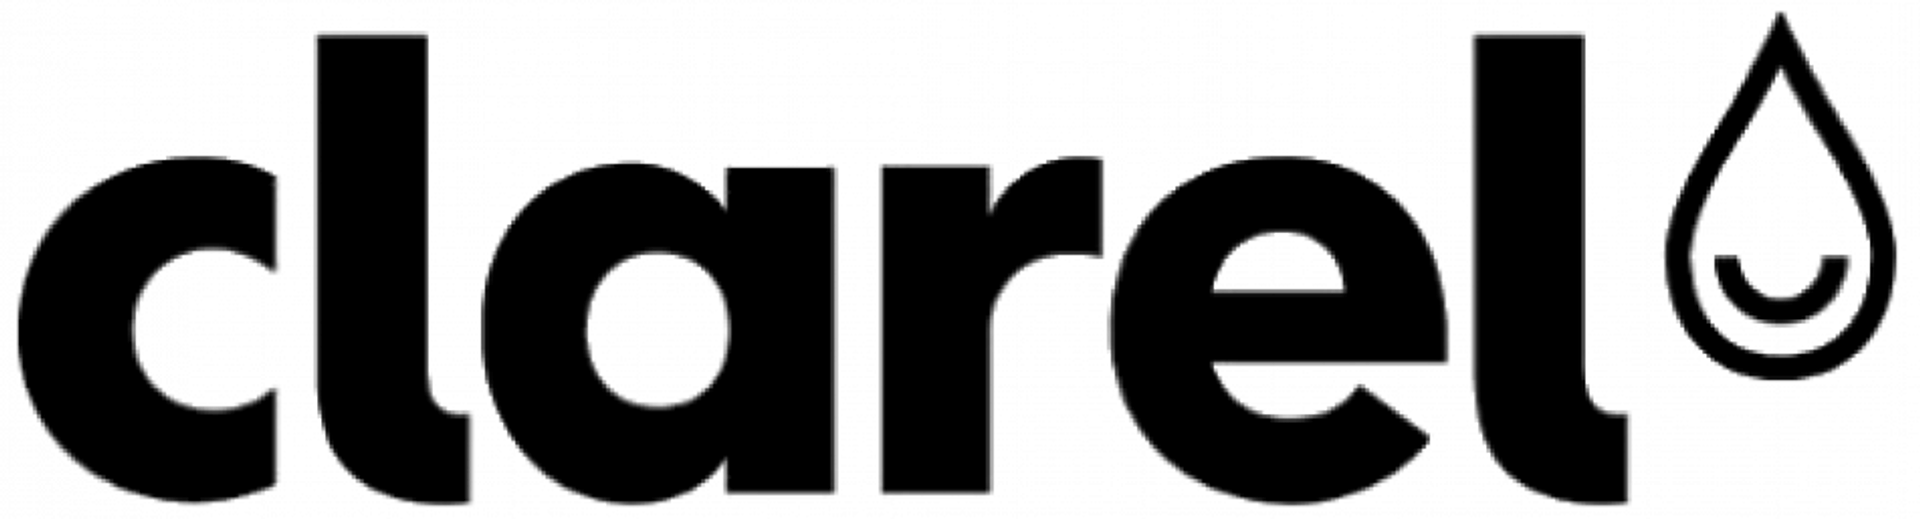 CLAREL logo de catálogo